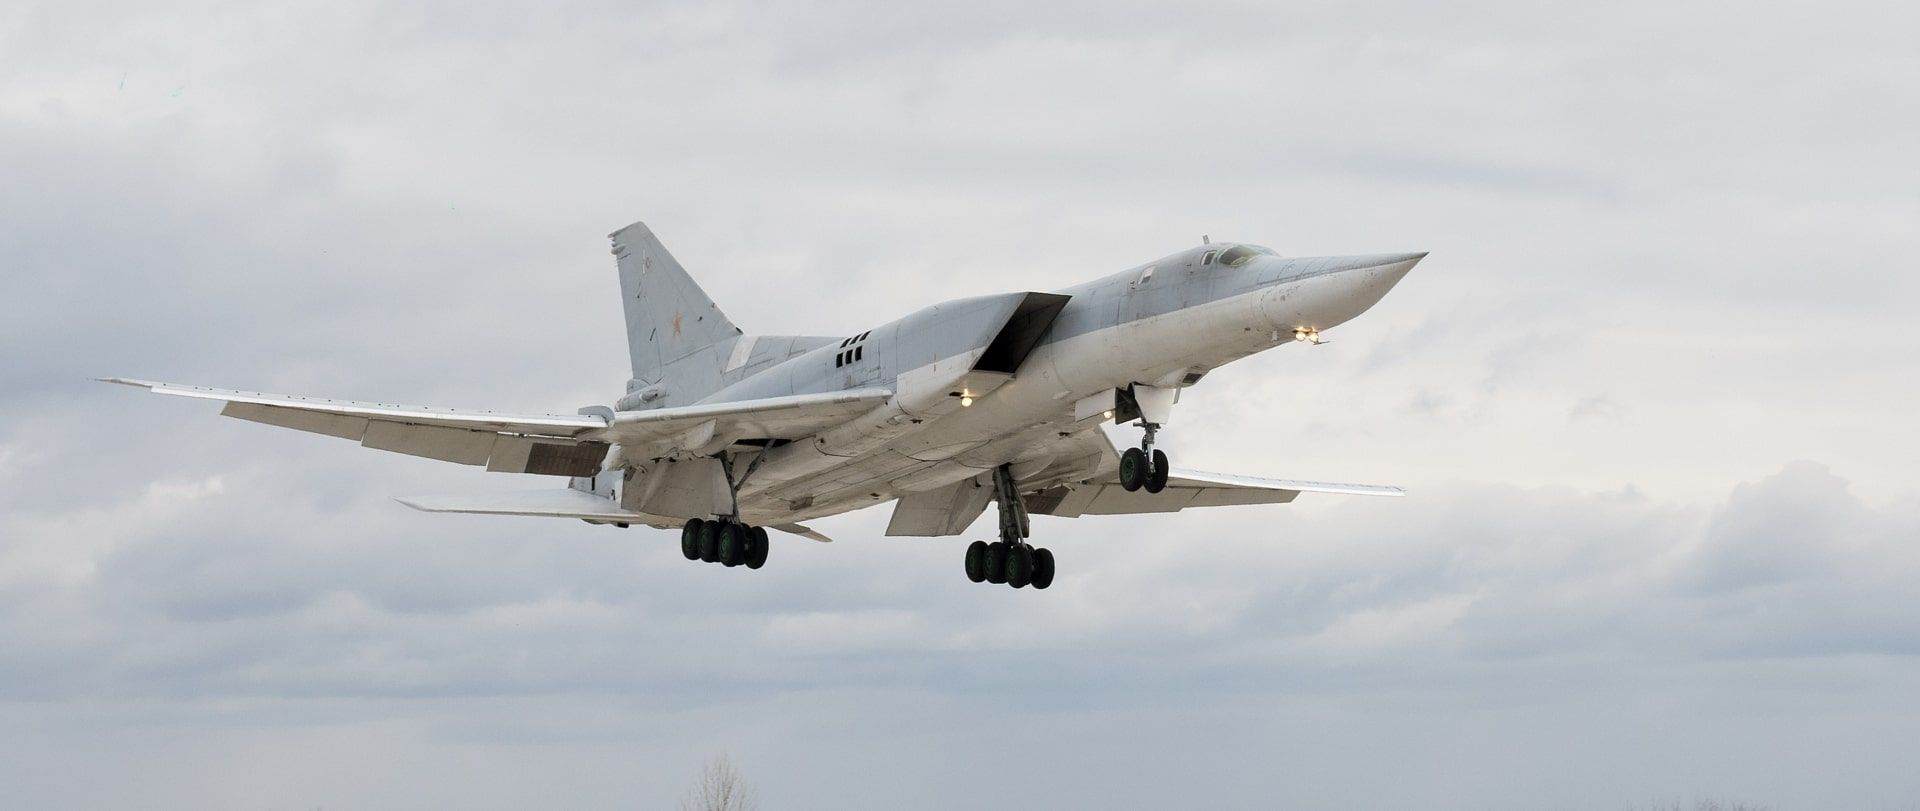 La Russie a officiellement confirmé qu'un drone ukrainien Tu-141, transformé en missile, a endommagé trois bombardiers stratégiques Tu-22M3 porteurs de missiles.